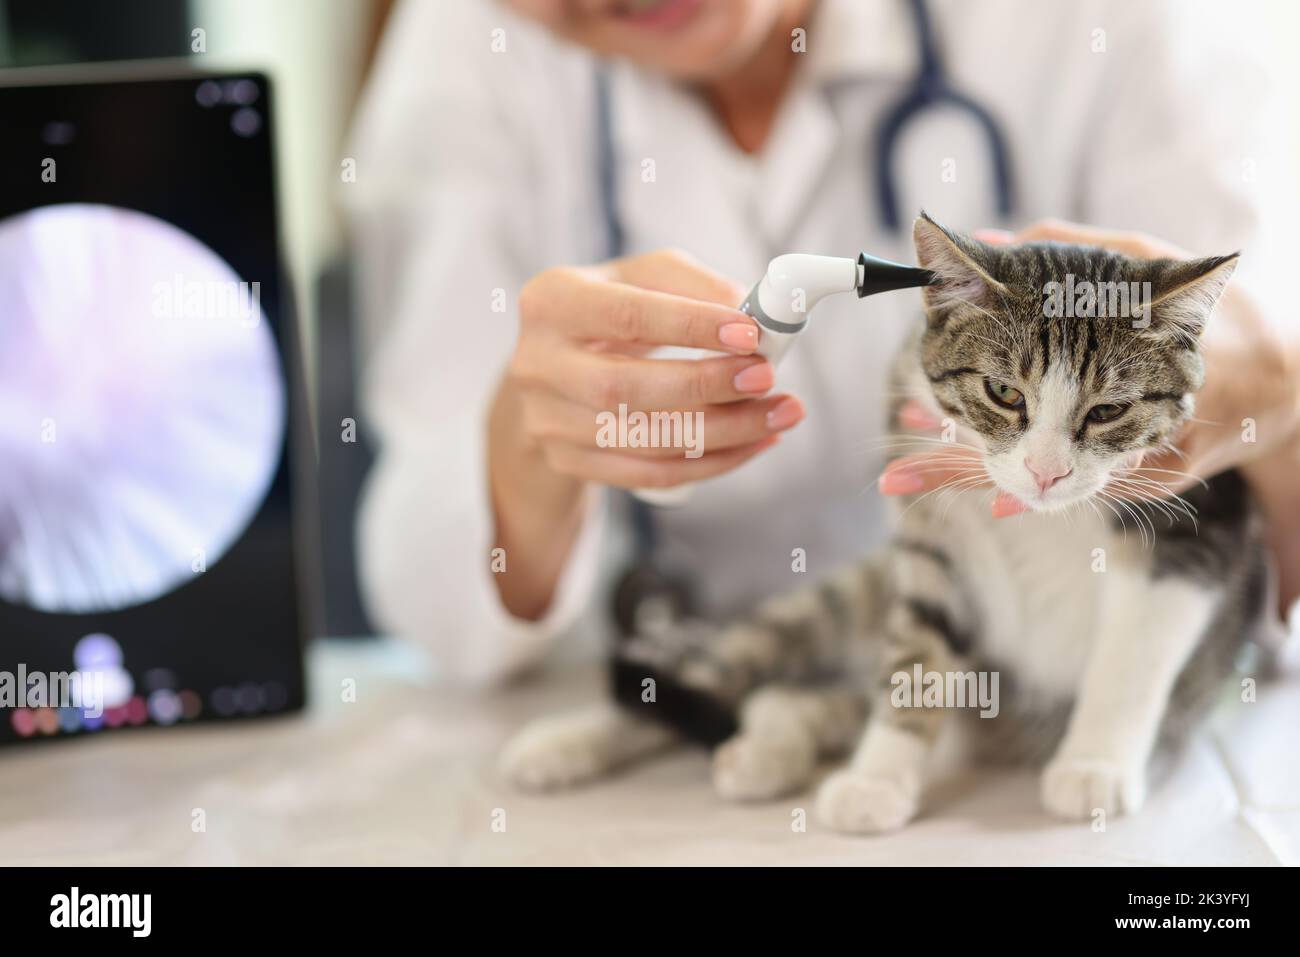 Examination of cat ear in veterinary clinic using an otoscope Stock Photo